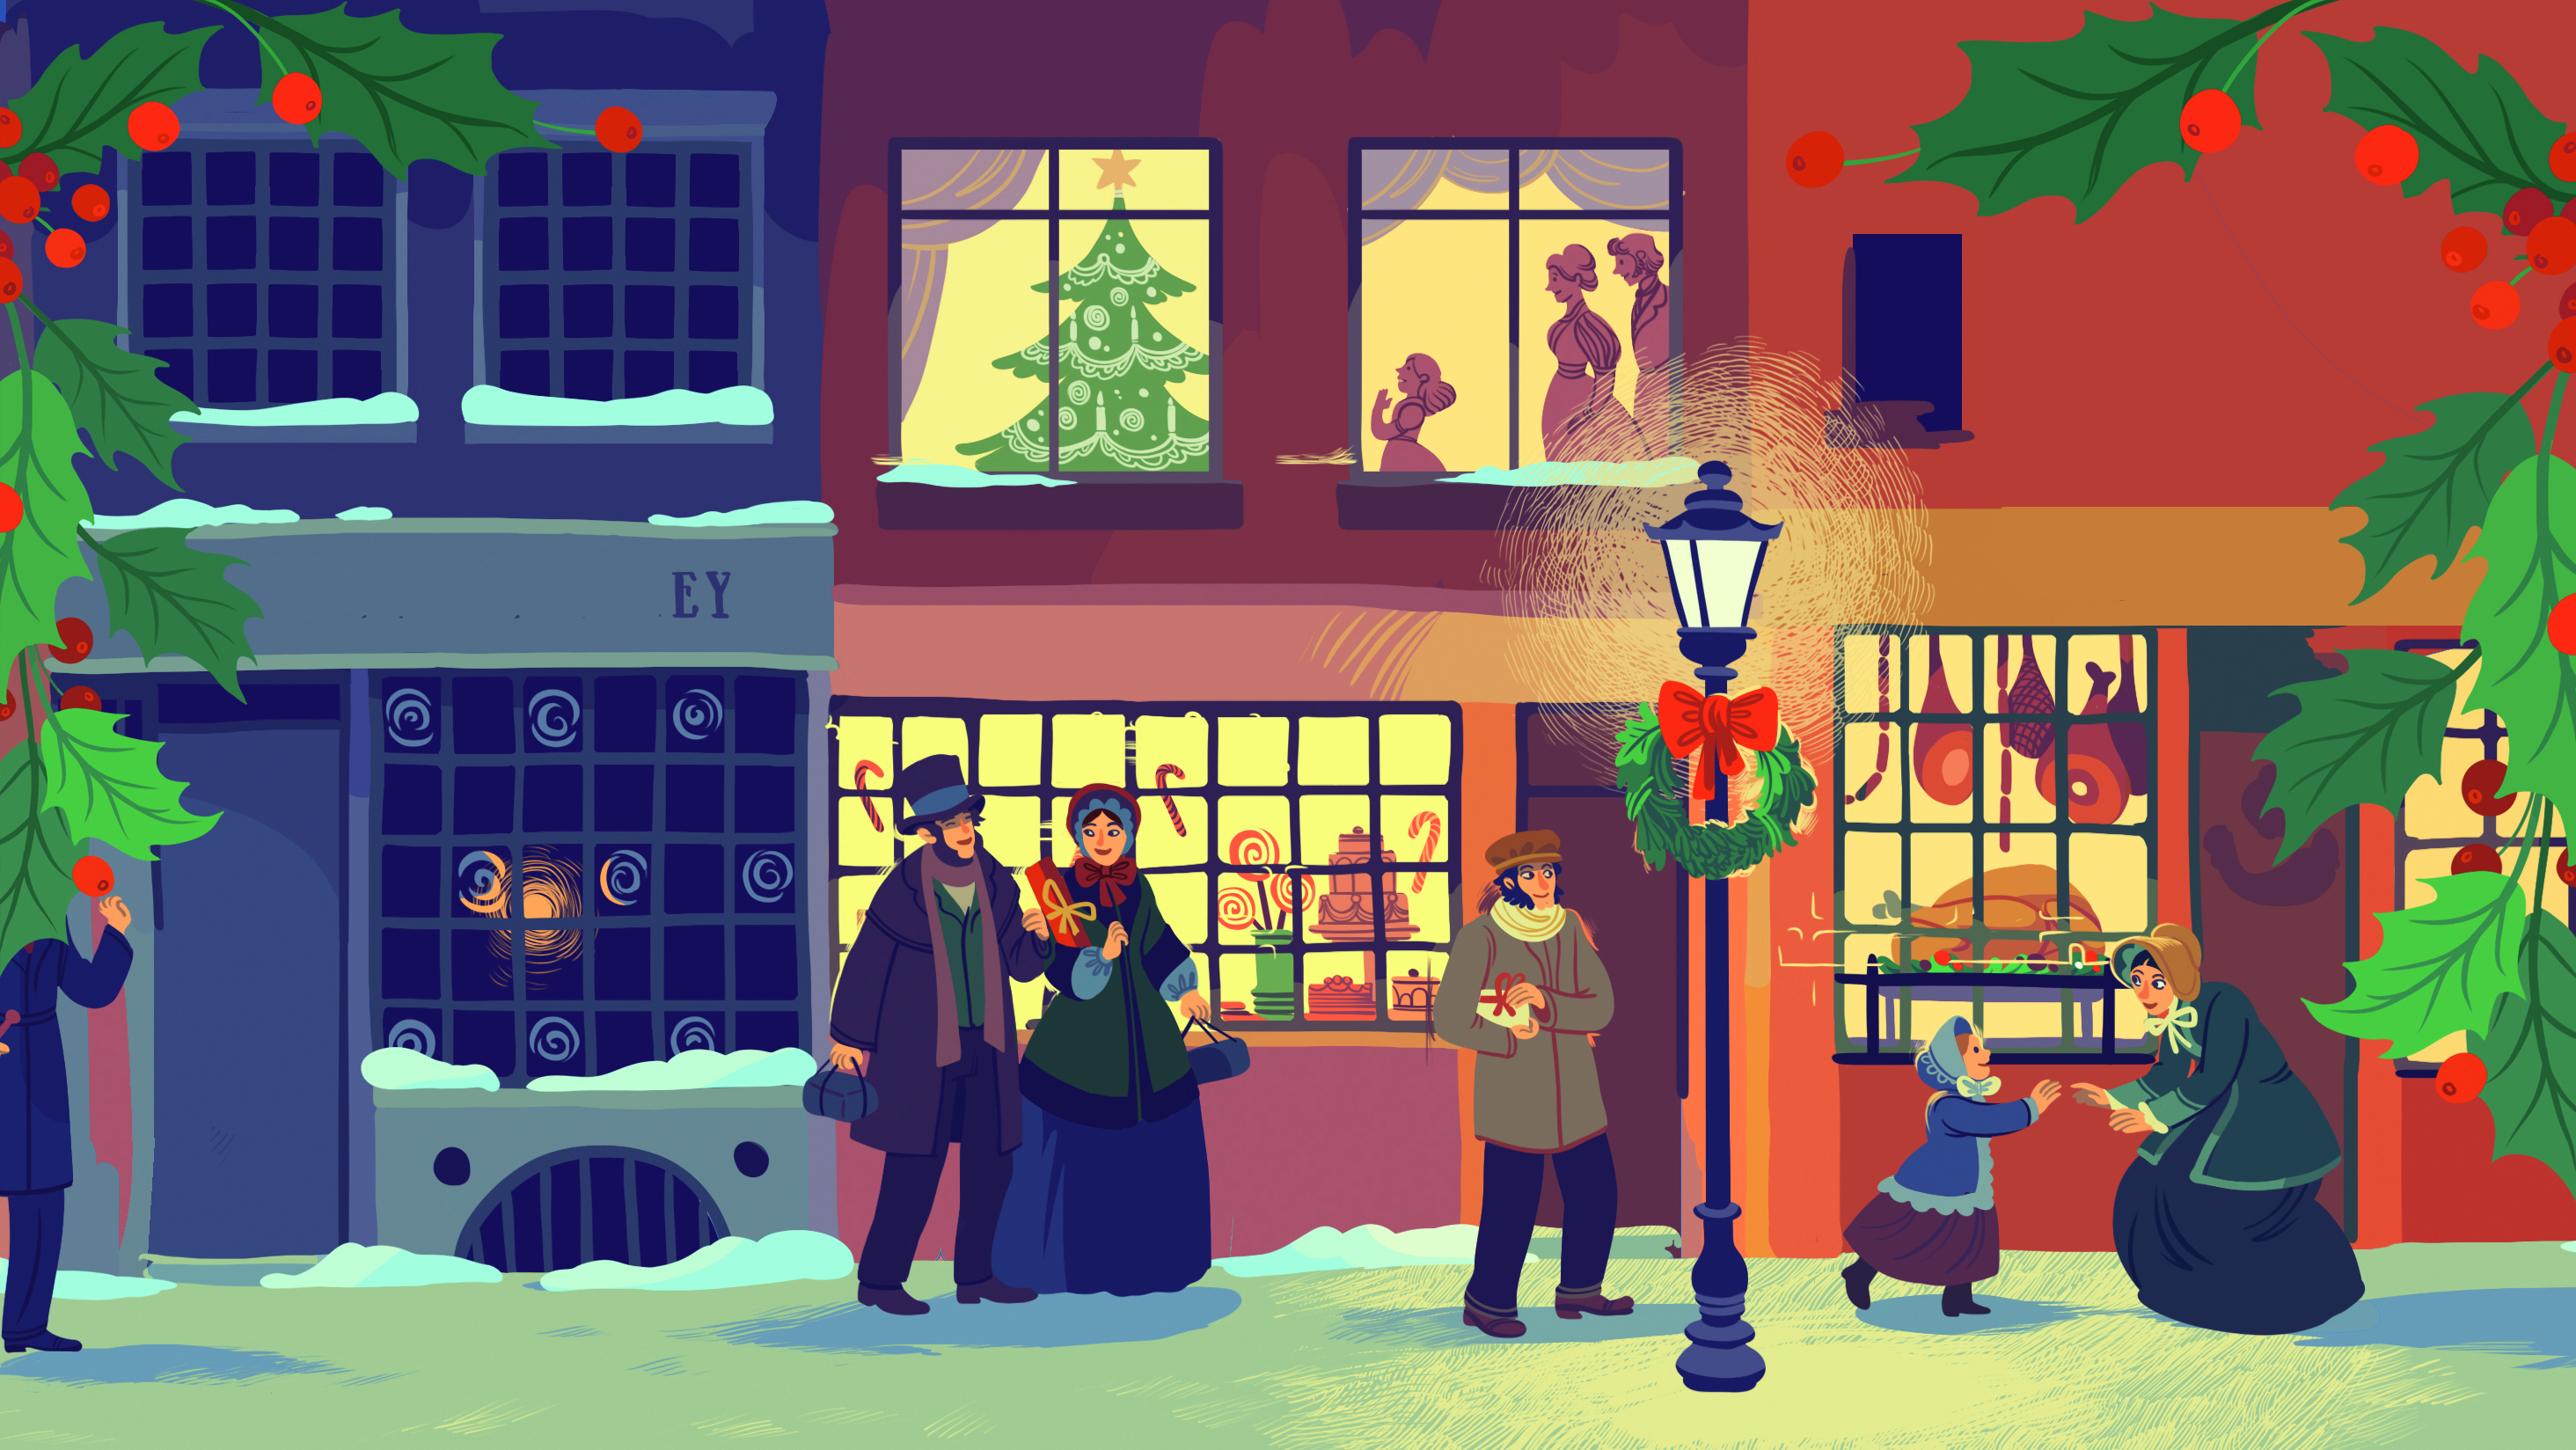 https://usborne.com/media/magefan_blog/Christmas_Carol_illustration_1.jpg